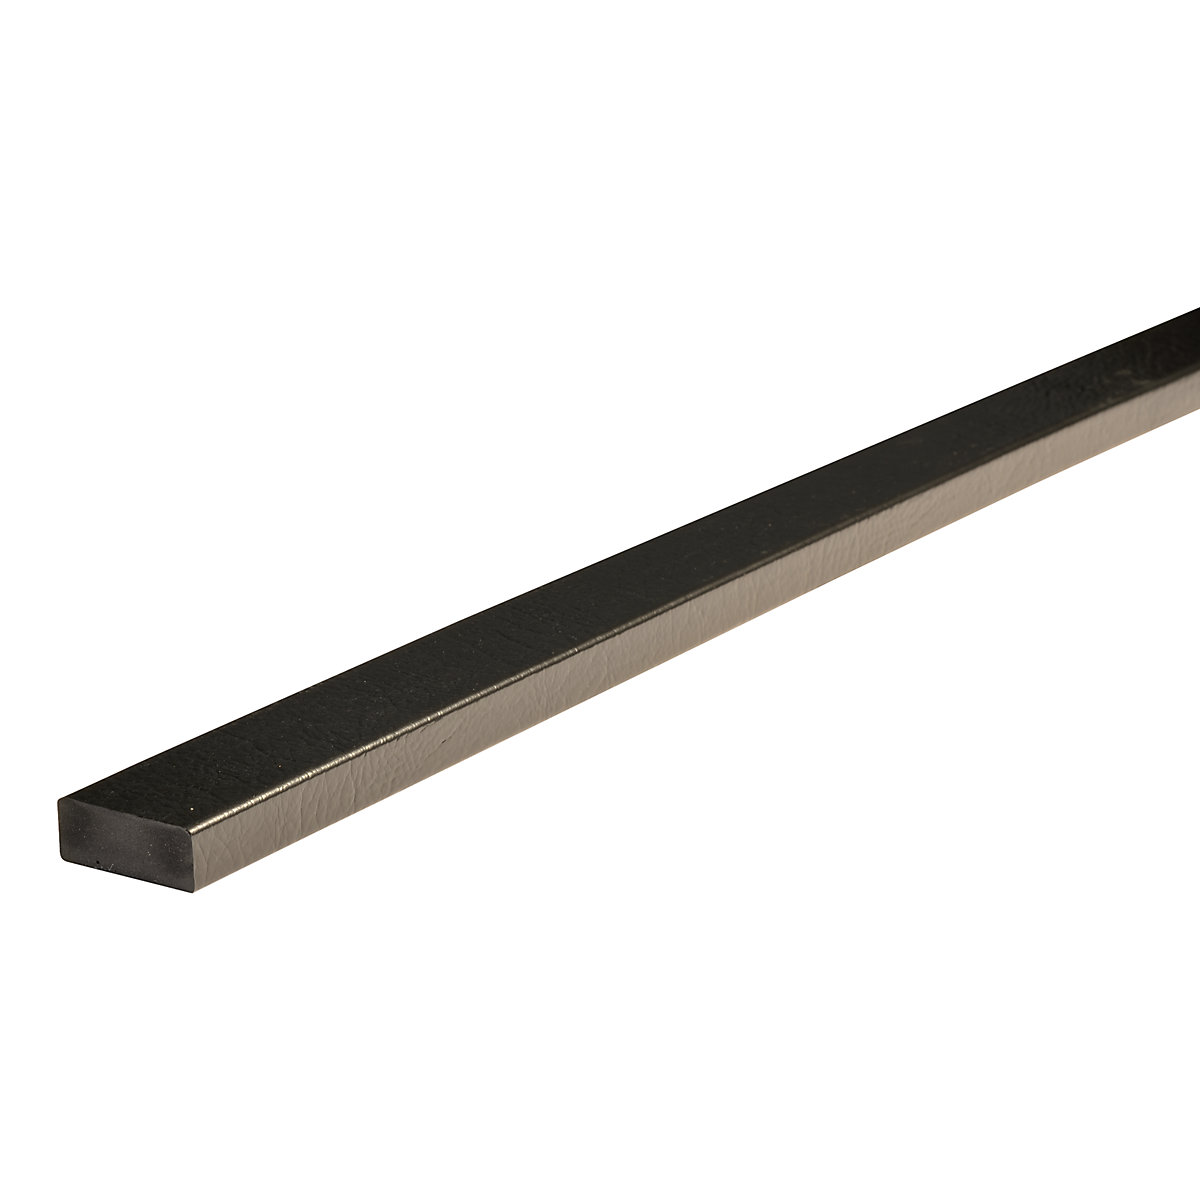 Knuffi®-oppervlaktebescherming – SHG, type D, 1 rol à 5 m, zwart-19